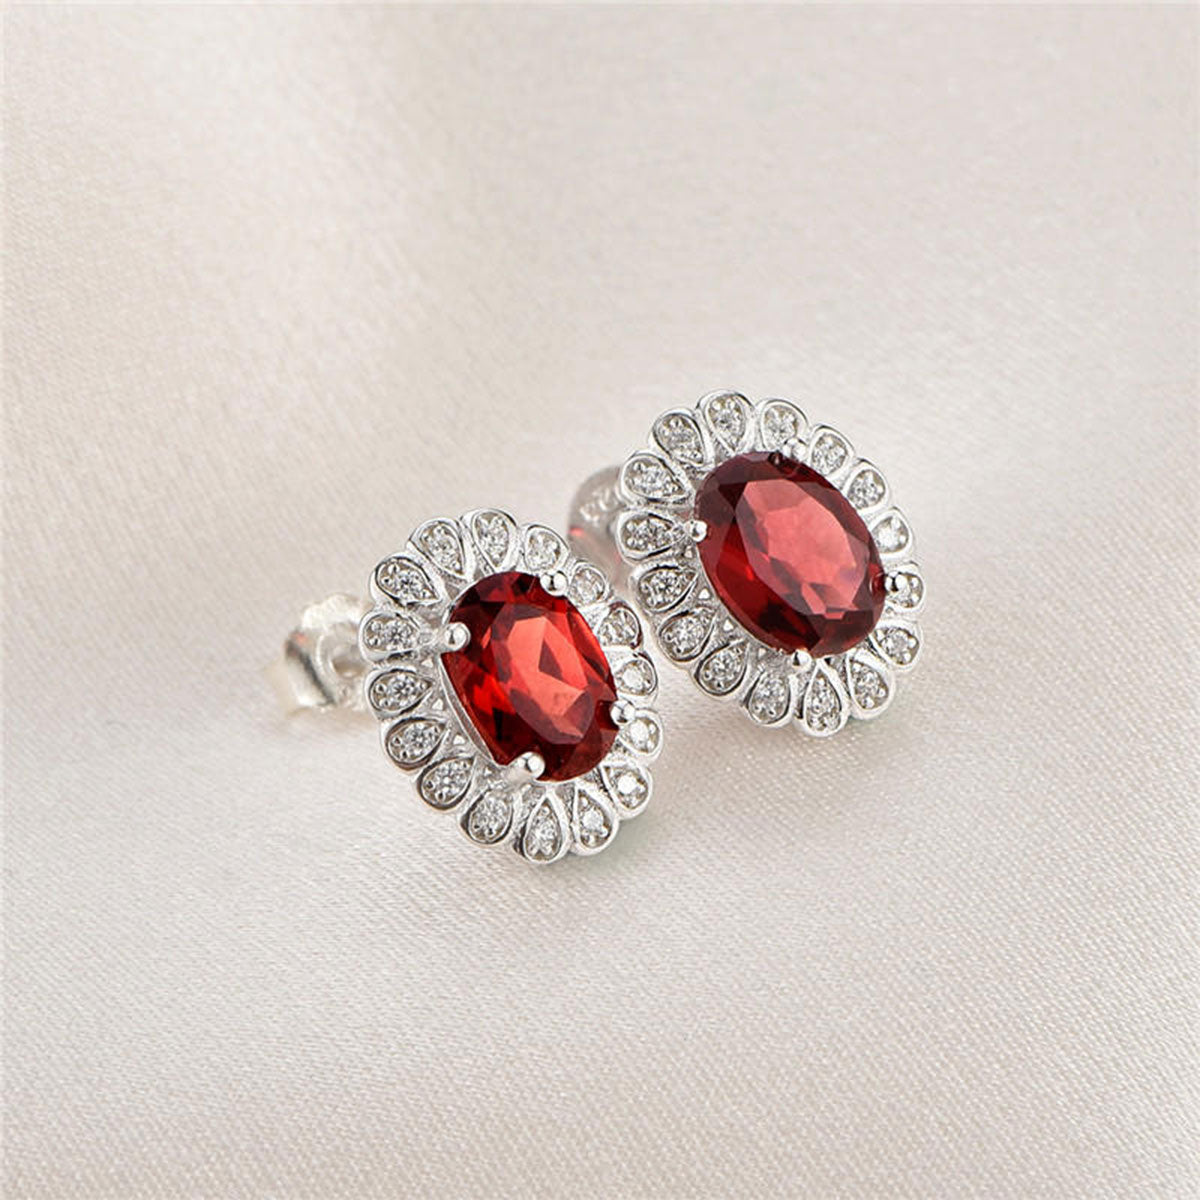 Ruby Garnet Full Stones Olives Stud Earrings